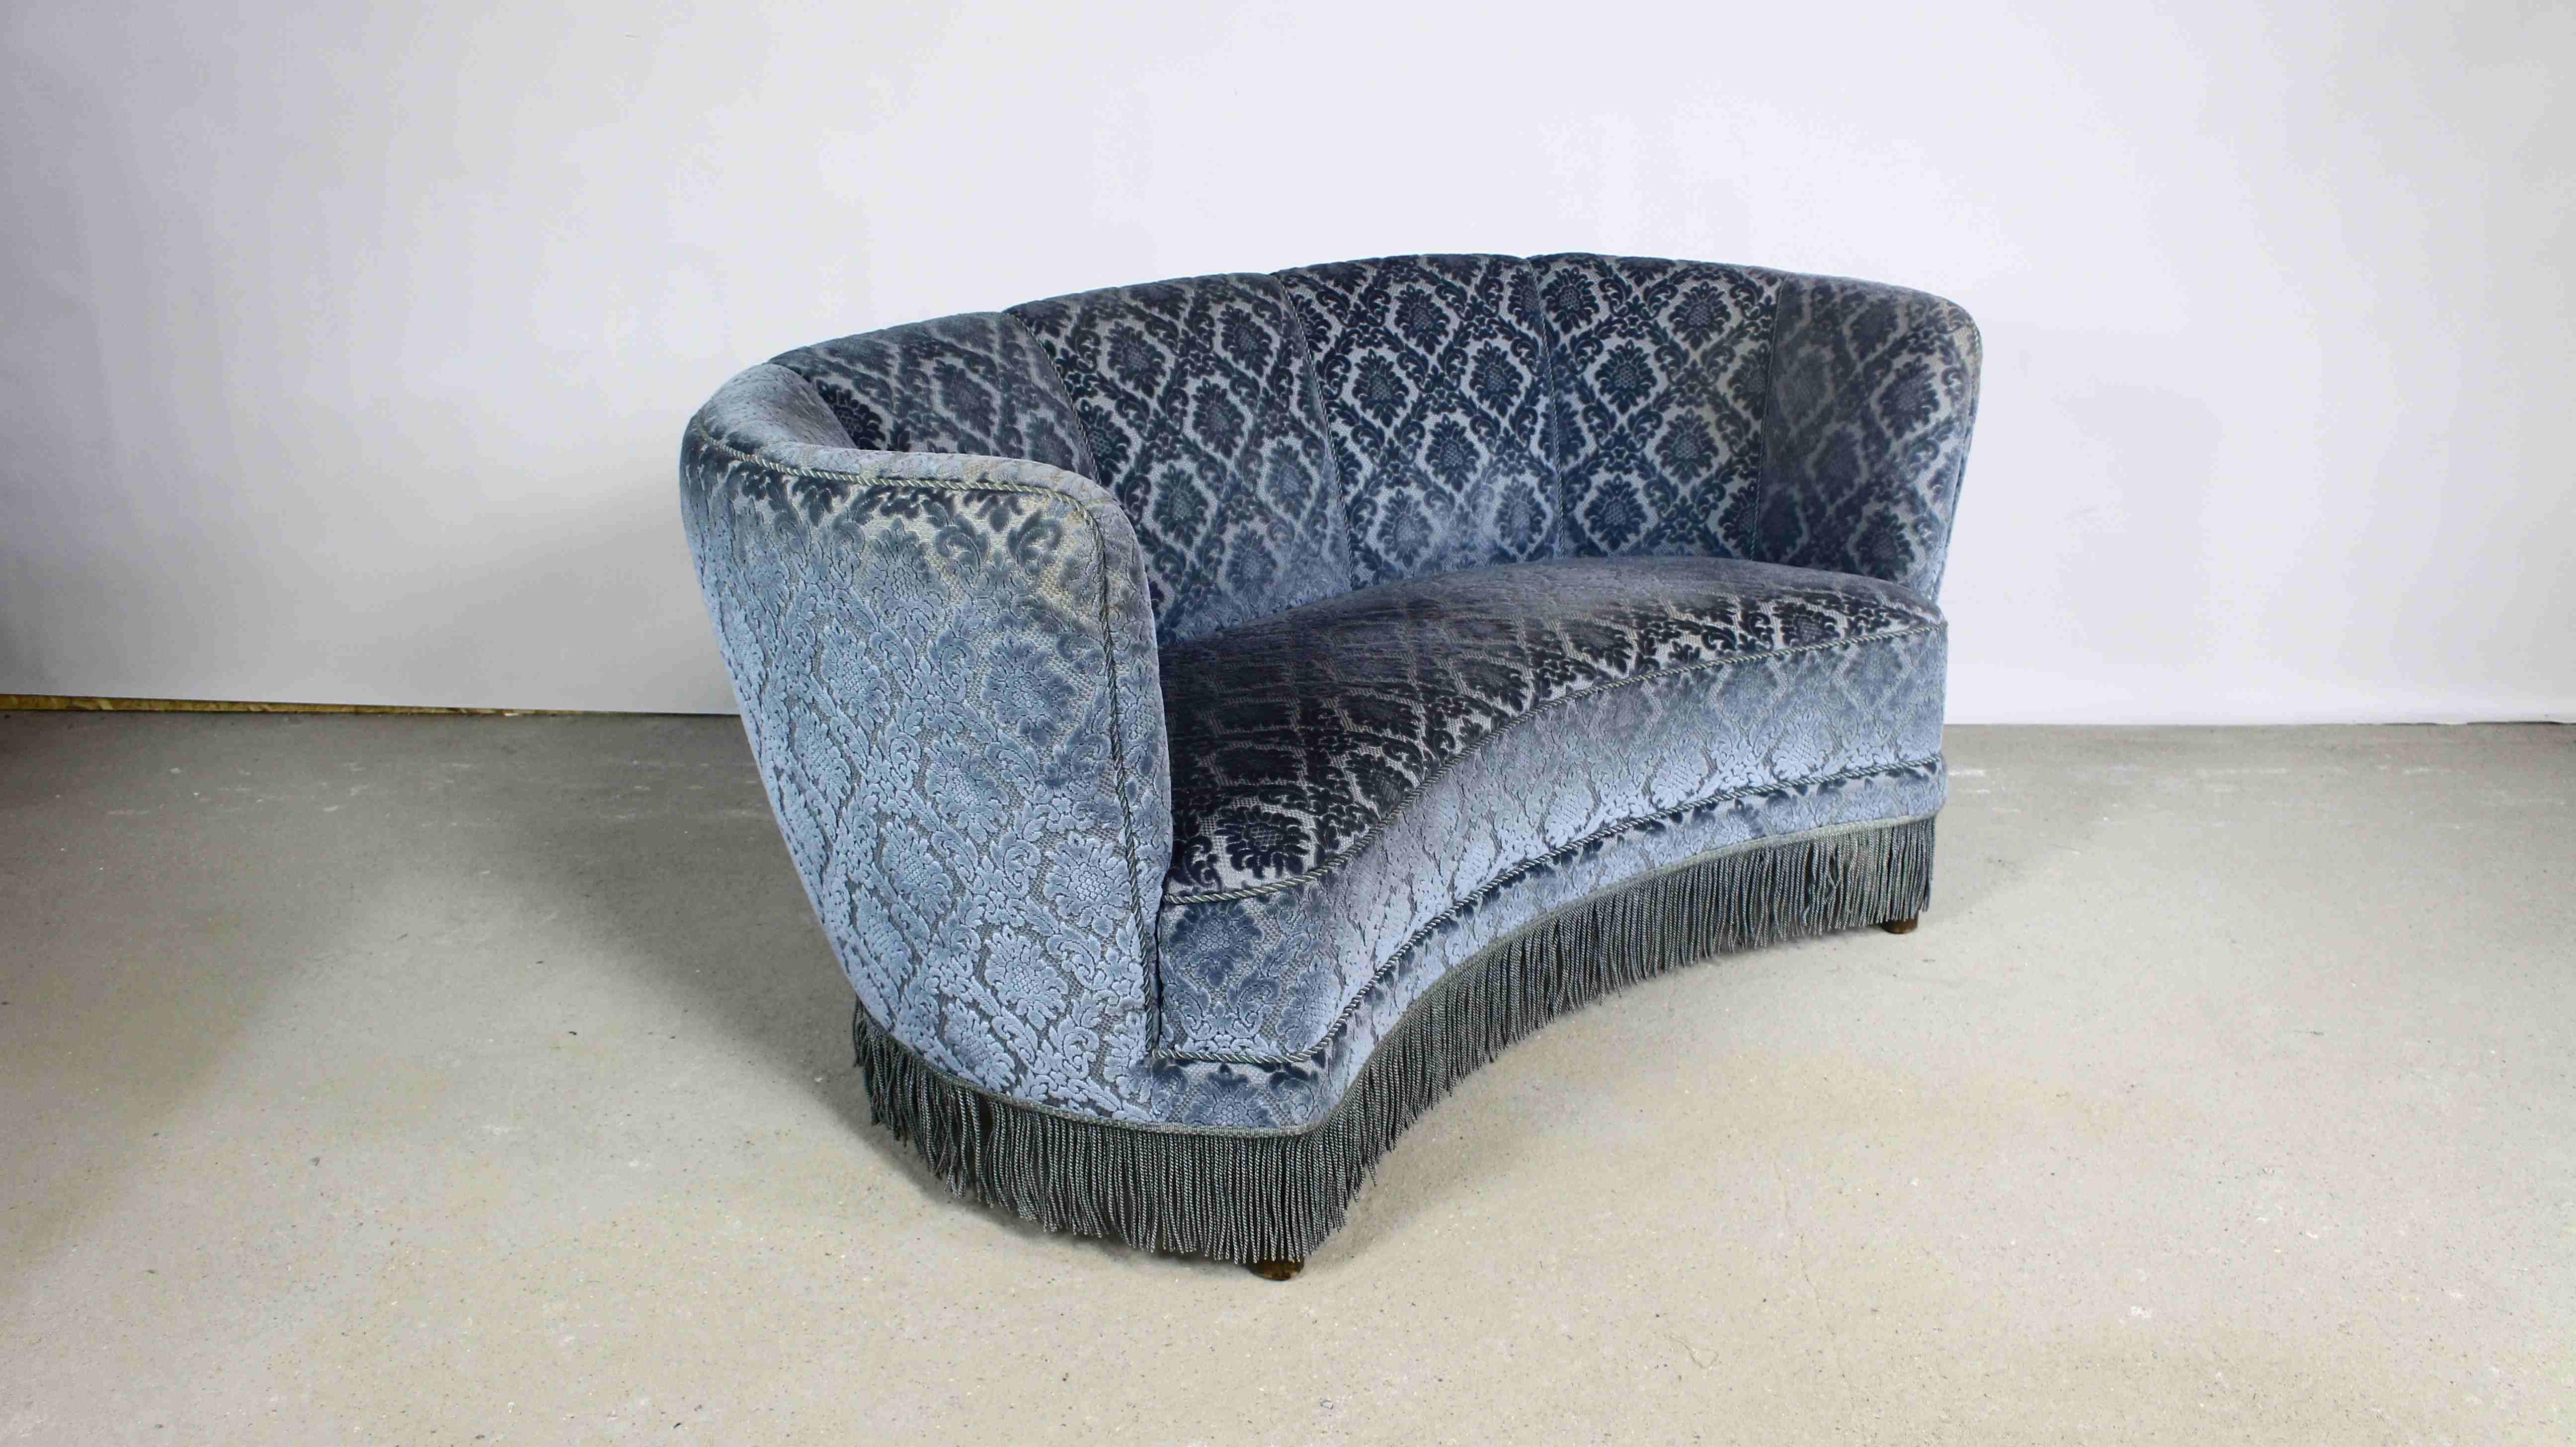 Ein schönes rundes Sofa im Art-Deco-Stil.
Gepolstert mit blauem Samt mit geprägtem Blumenmotiv.
Hergestellt in Dänemark in den 1950er Jahren.
Sitz mit Gurten und Federn.
Aufgehellte Stellen auf den Polstern sind der Effekt von Licht. Die Polsterung